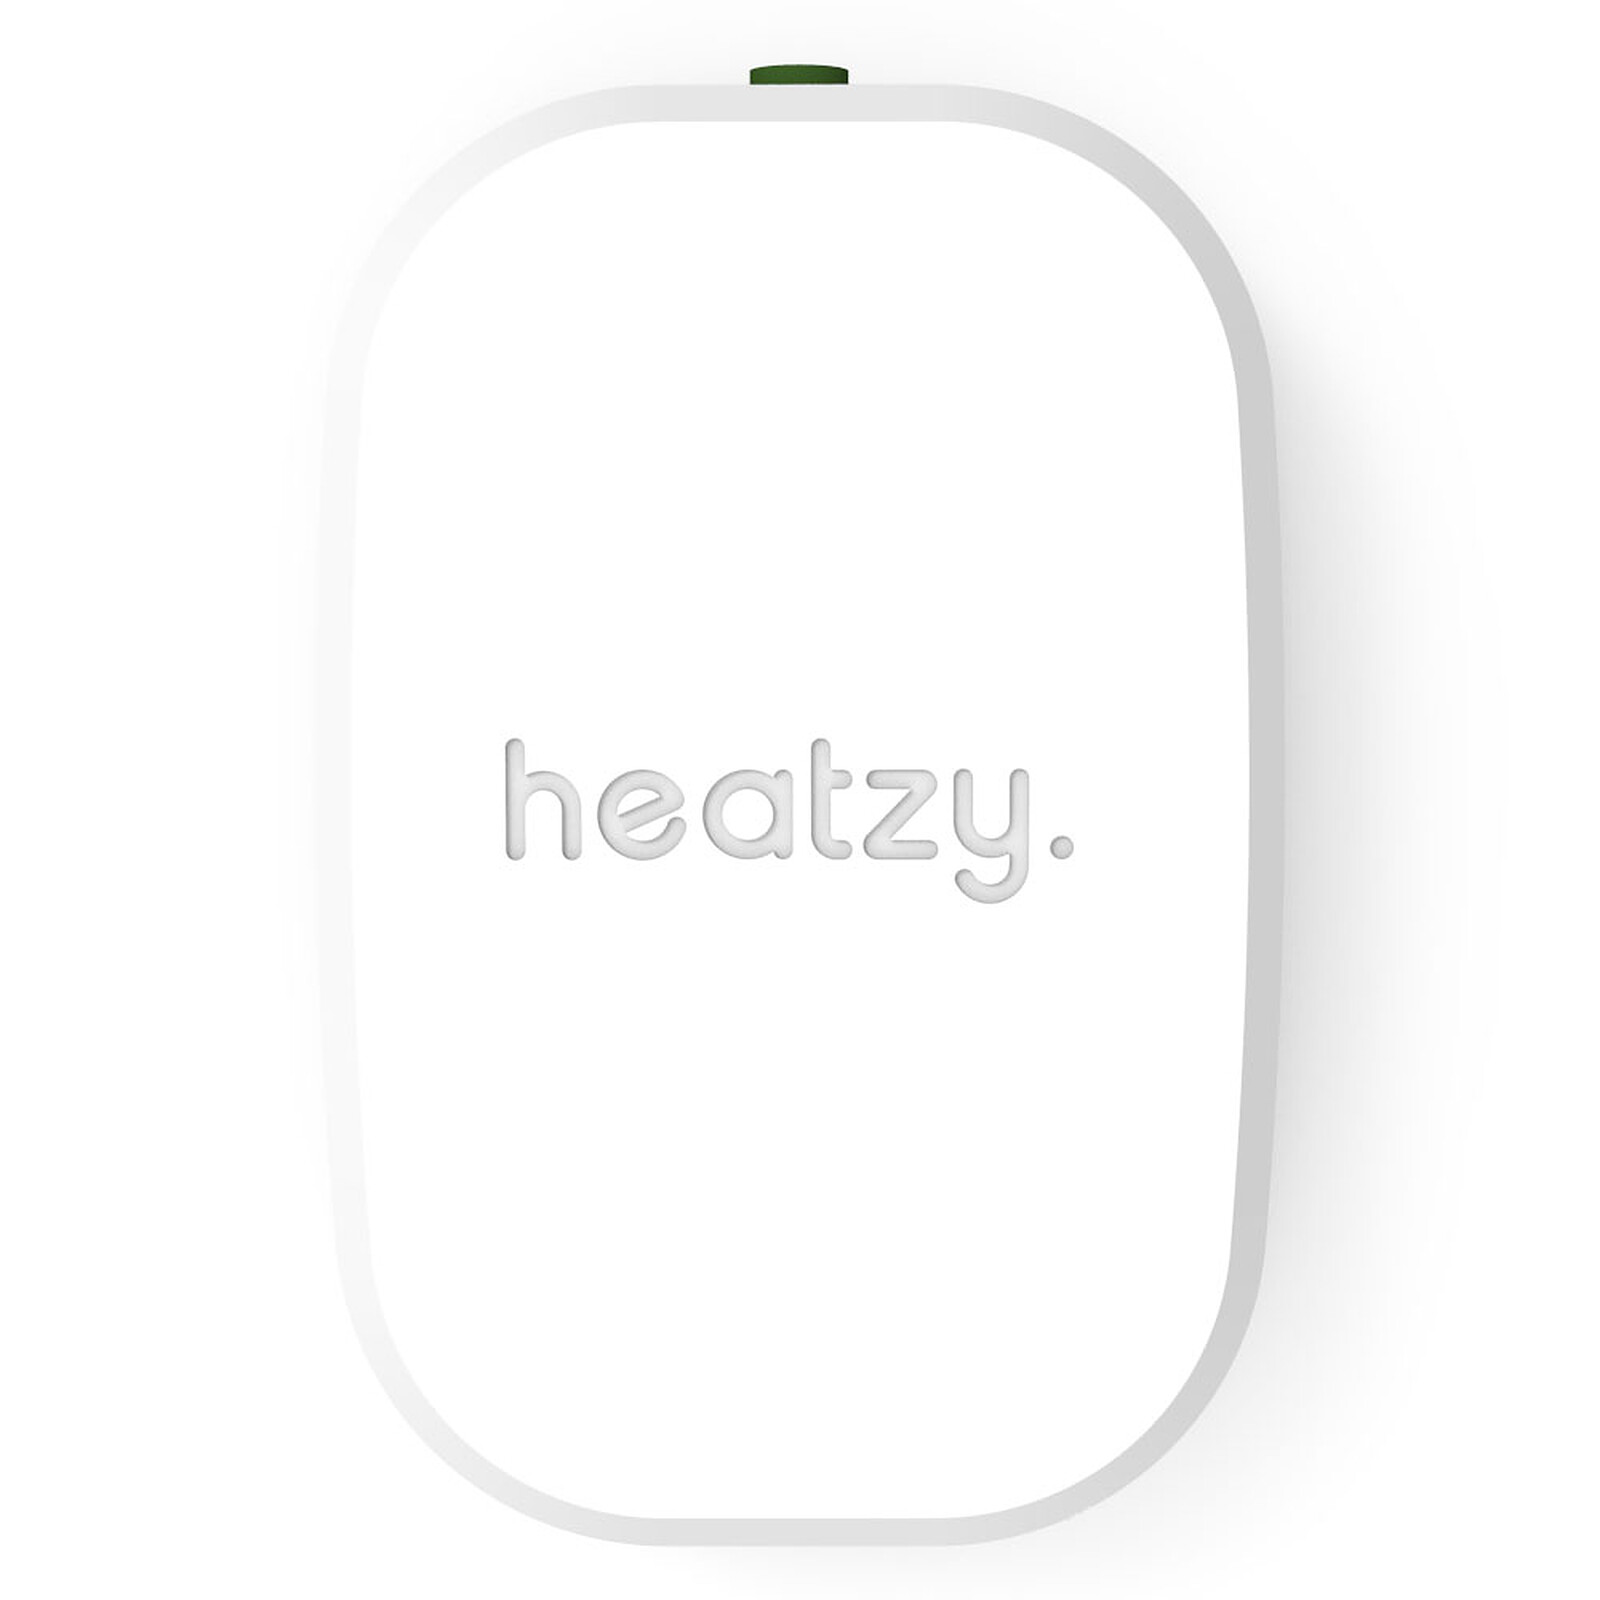 Test du thermostat connecté Heatzy Flam et son Plugzy